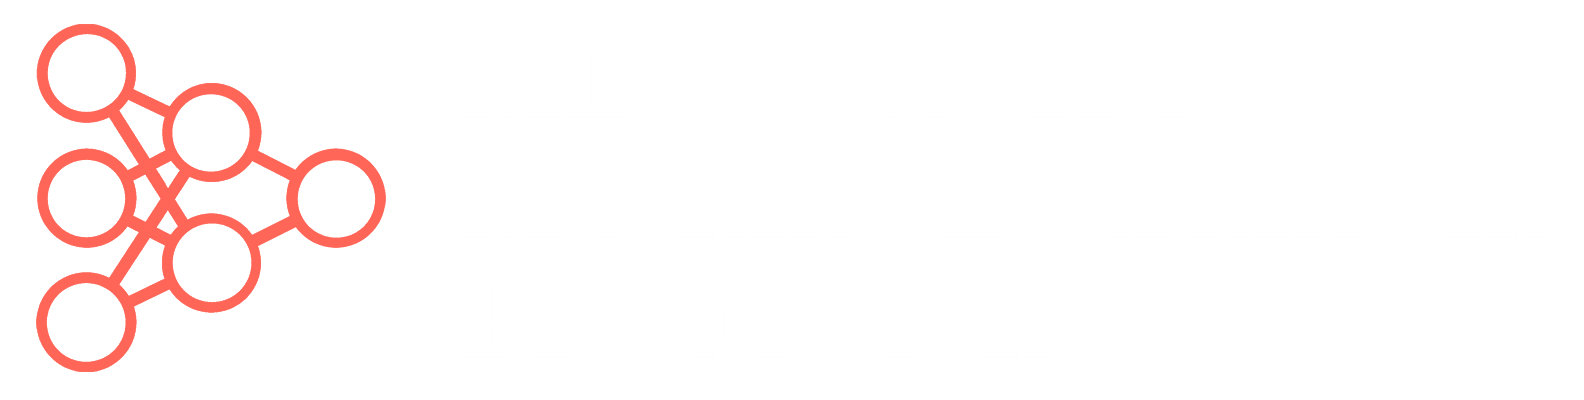 mlops-world-logo